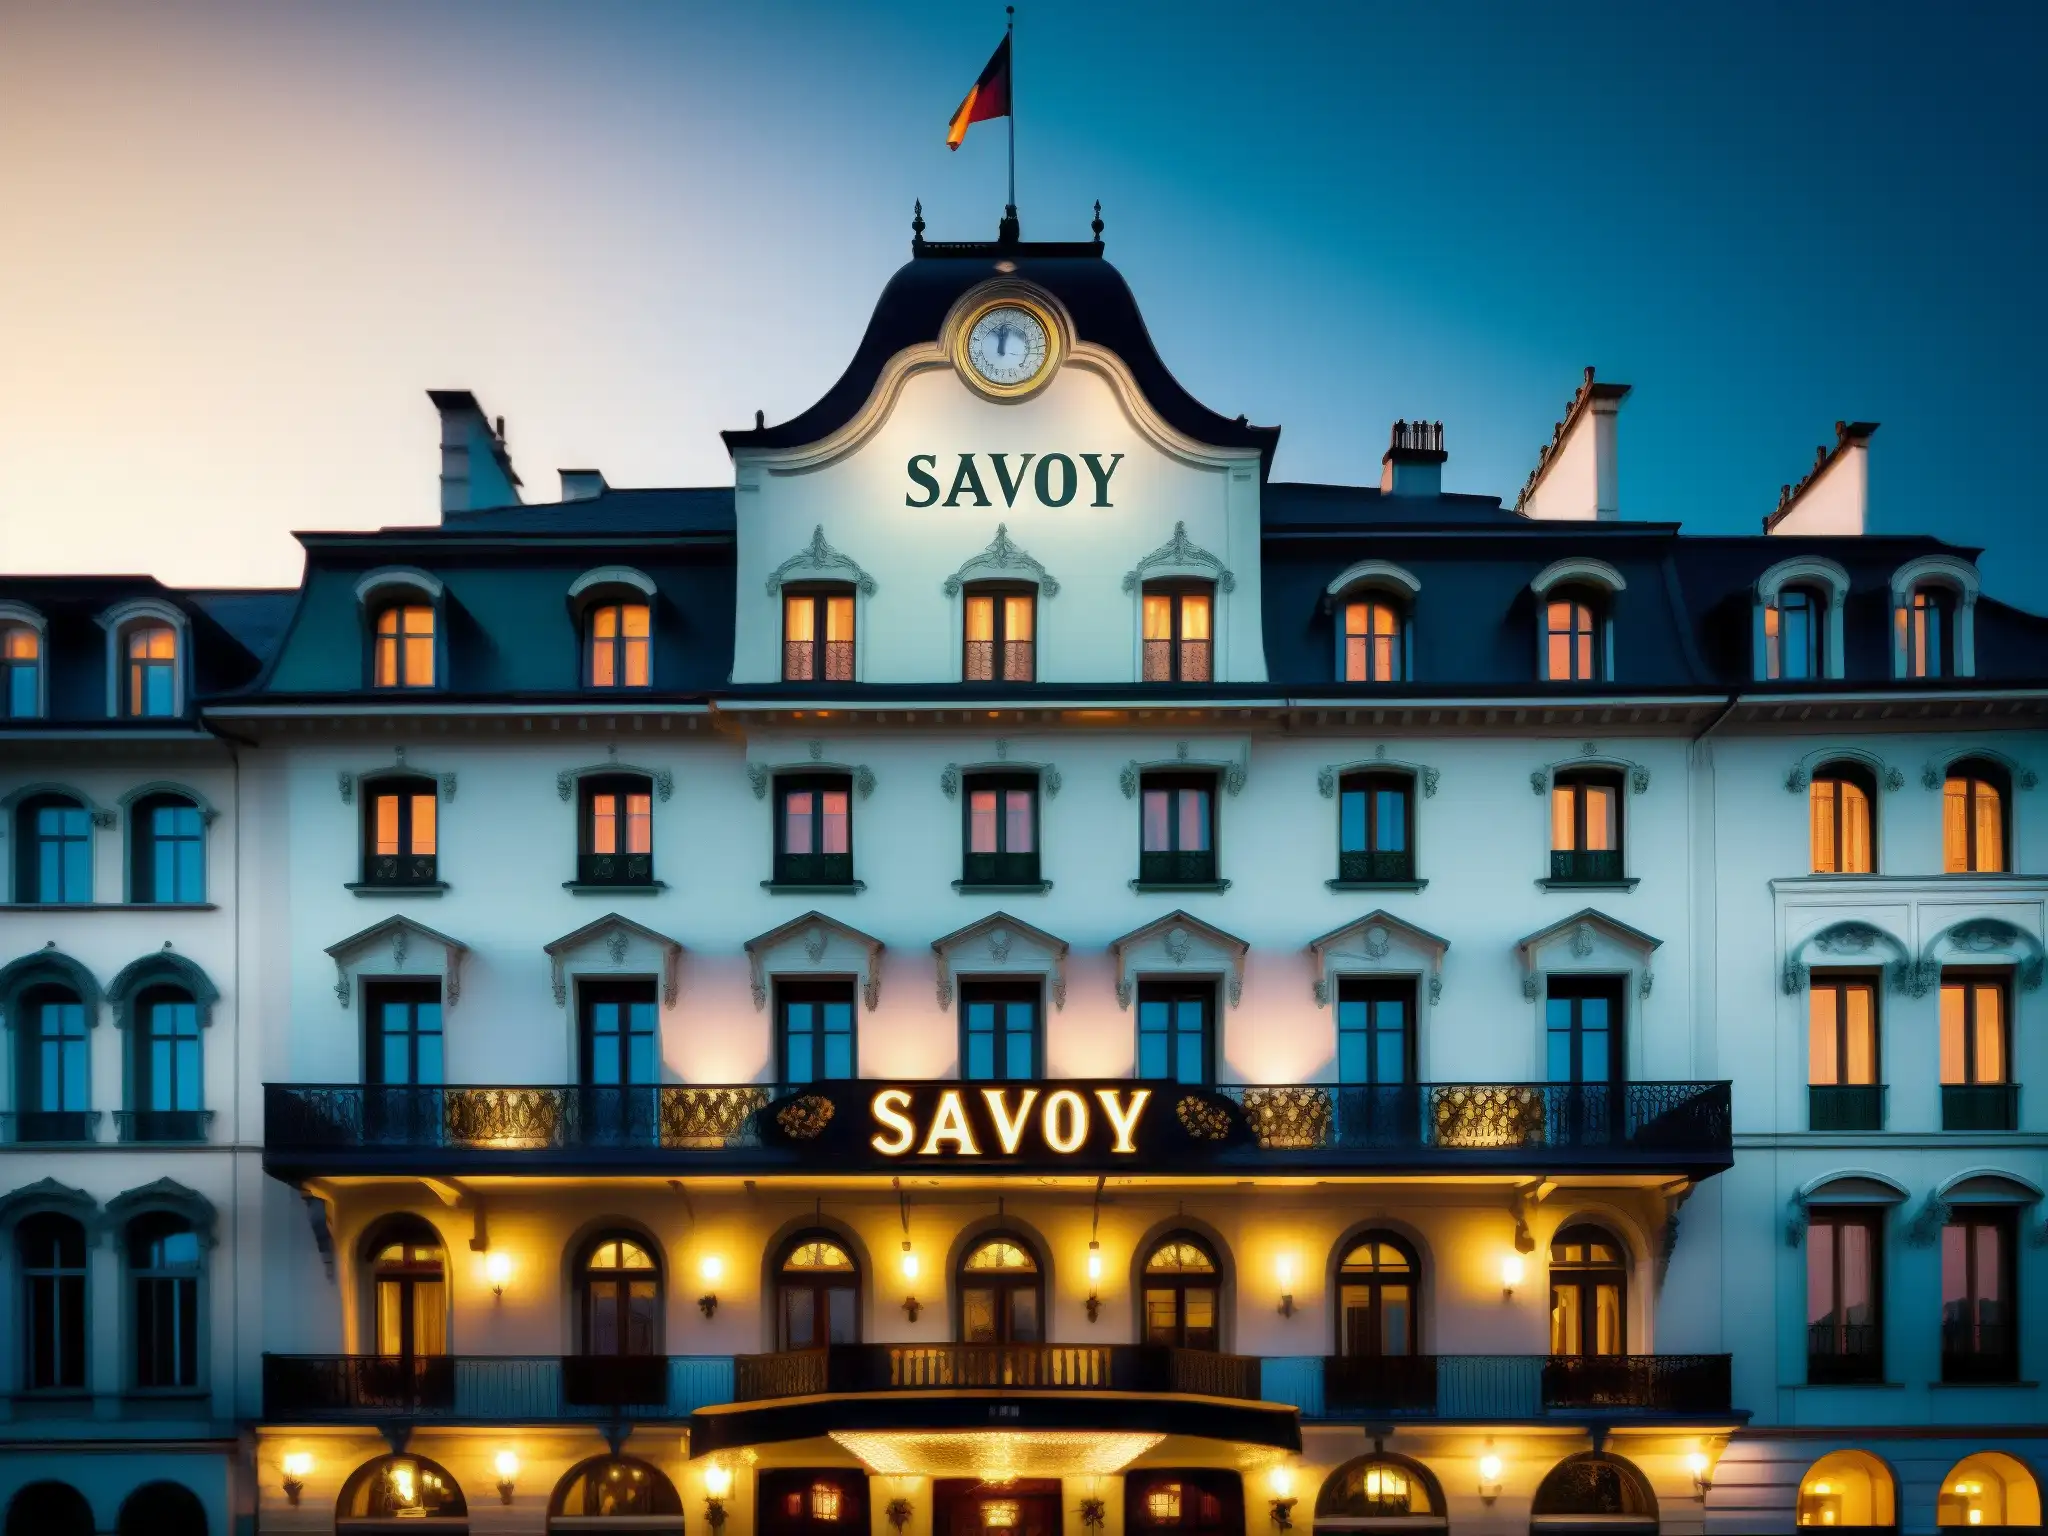 Imagen documental del histórico Hotel Savoy con su grandiosa arquitectura y atmósfera misteriosa, evocando la leyenda del fantasma y sus evidencias